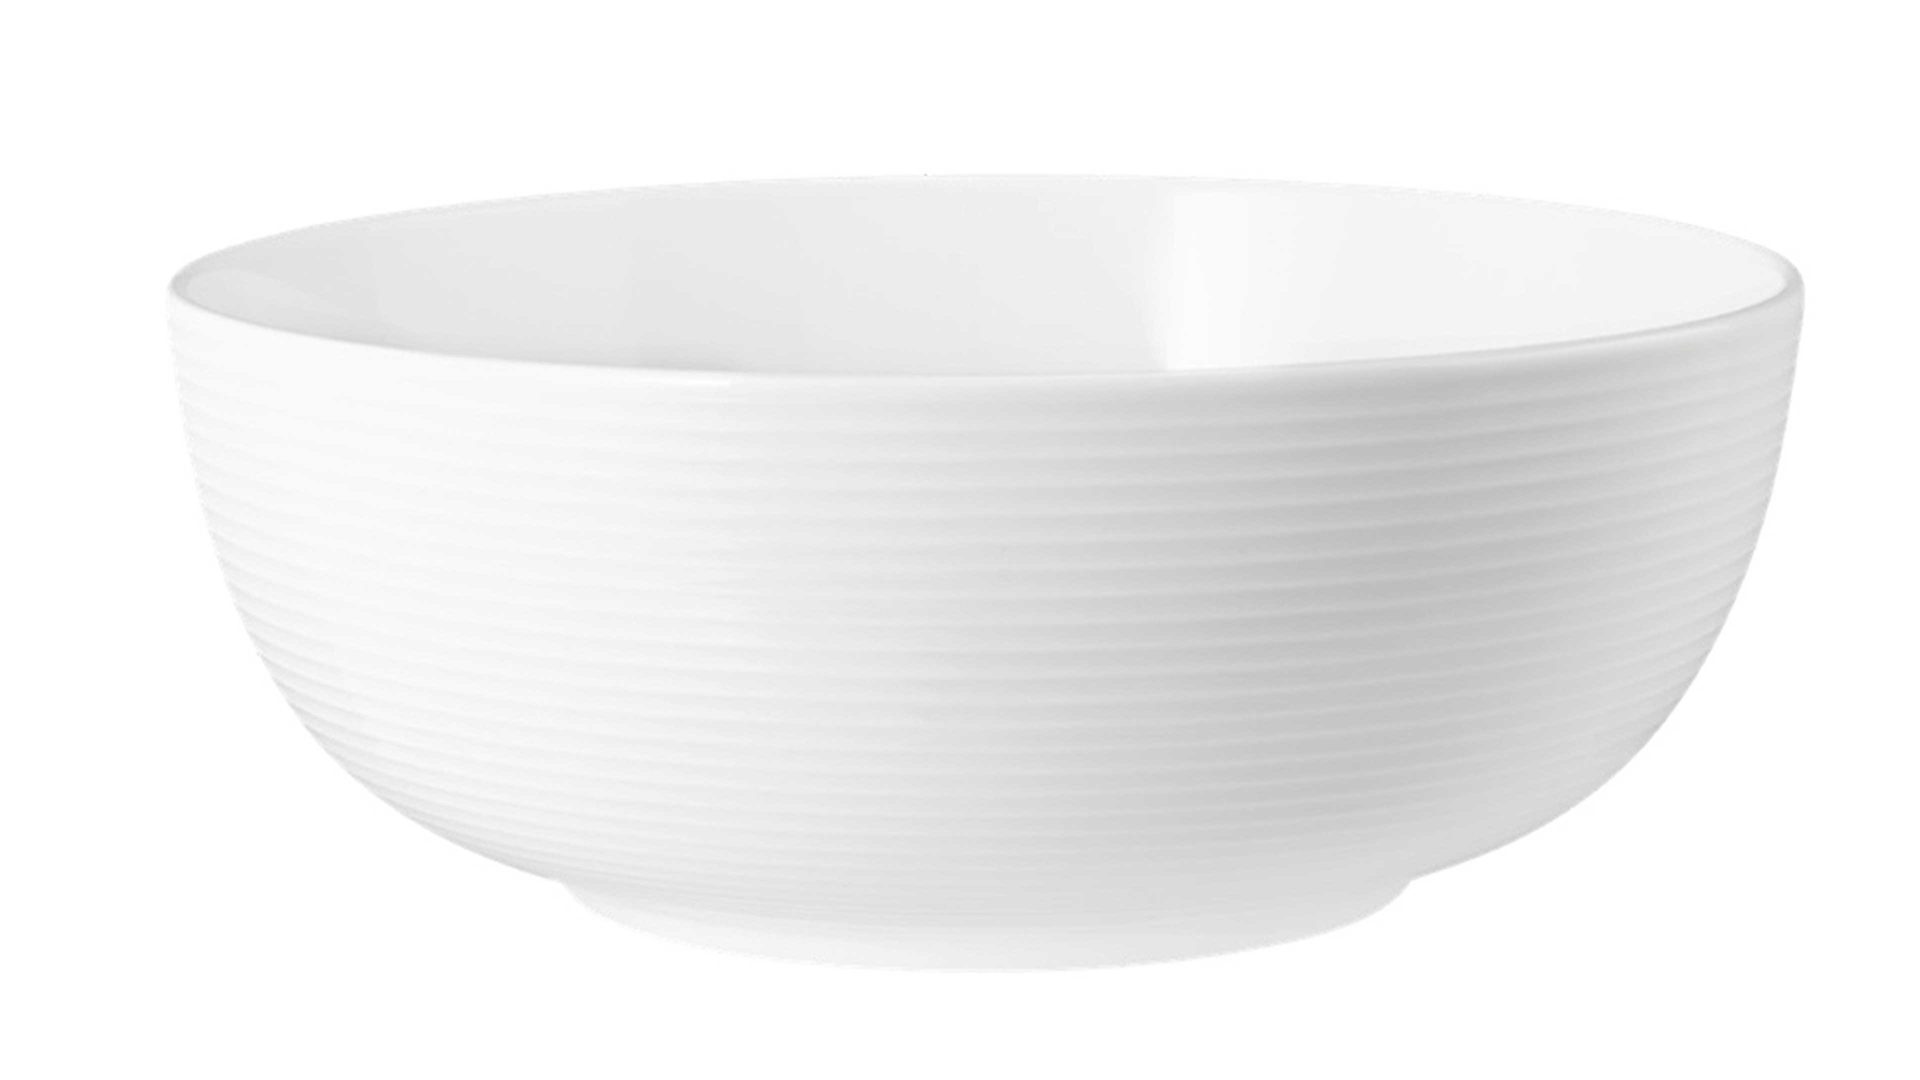 Schale Seltmann aus Porzellan in Weiß Seltmann Geschirrserie Beat 3 – Foodbowl weißes Porzellan – ca. 1720 ml